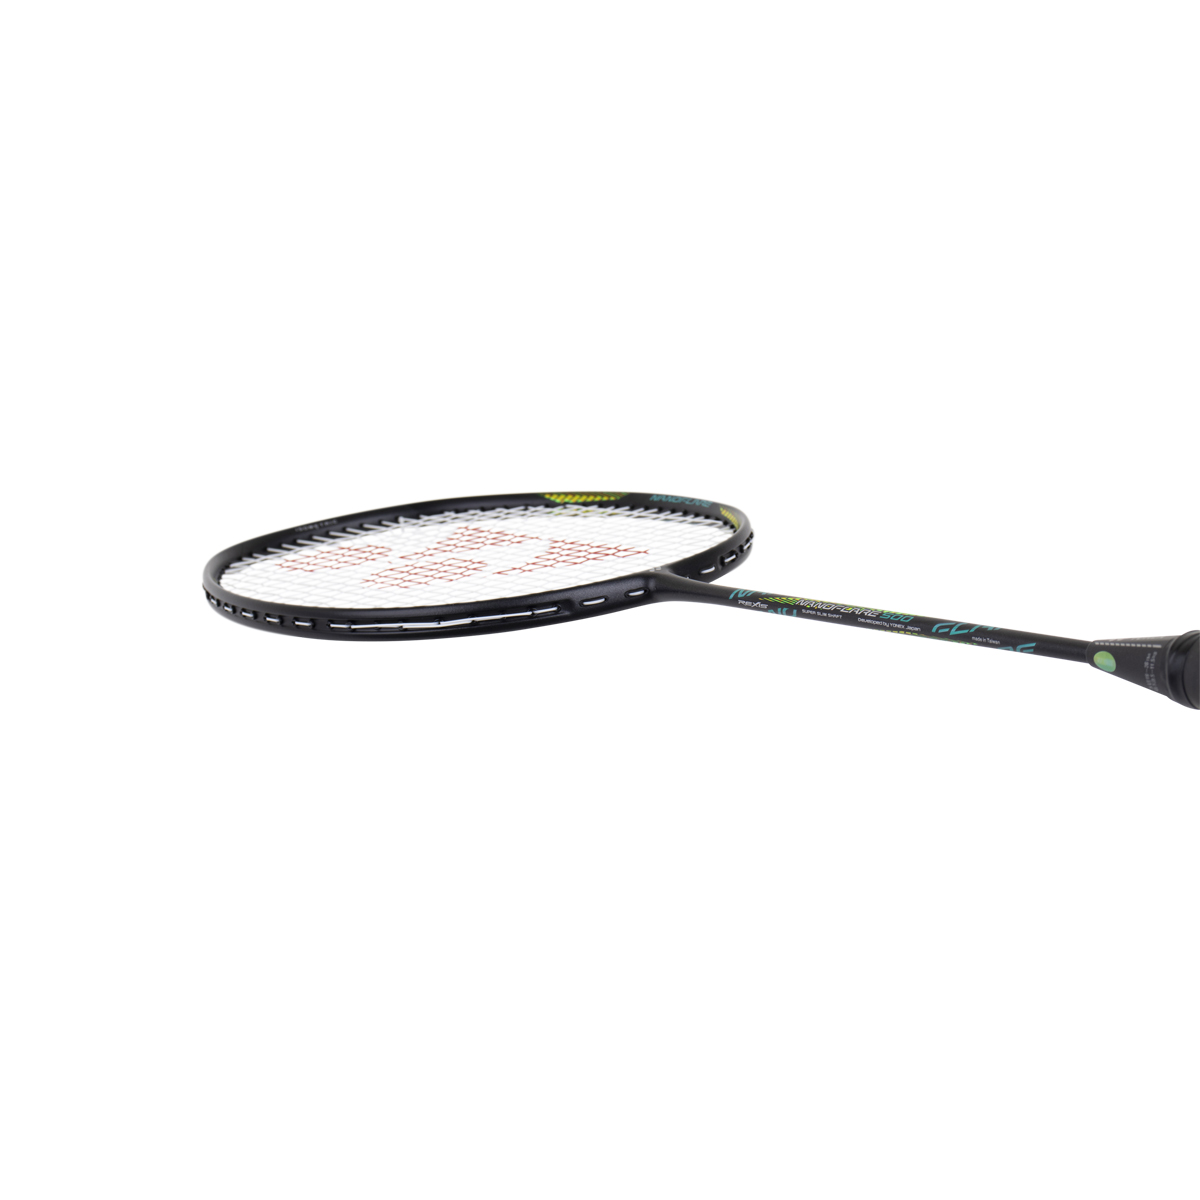 Badmintonschläger - YONEX - NANOFLARE 500Detailbild - 3